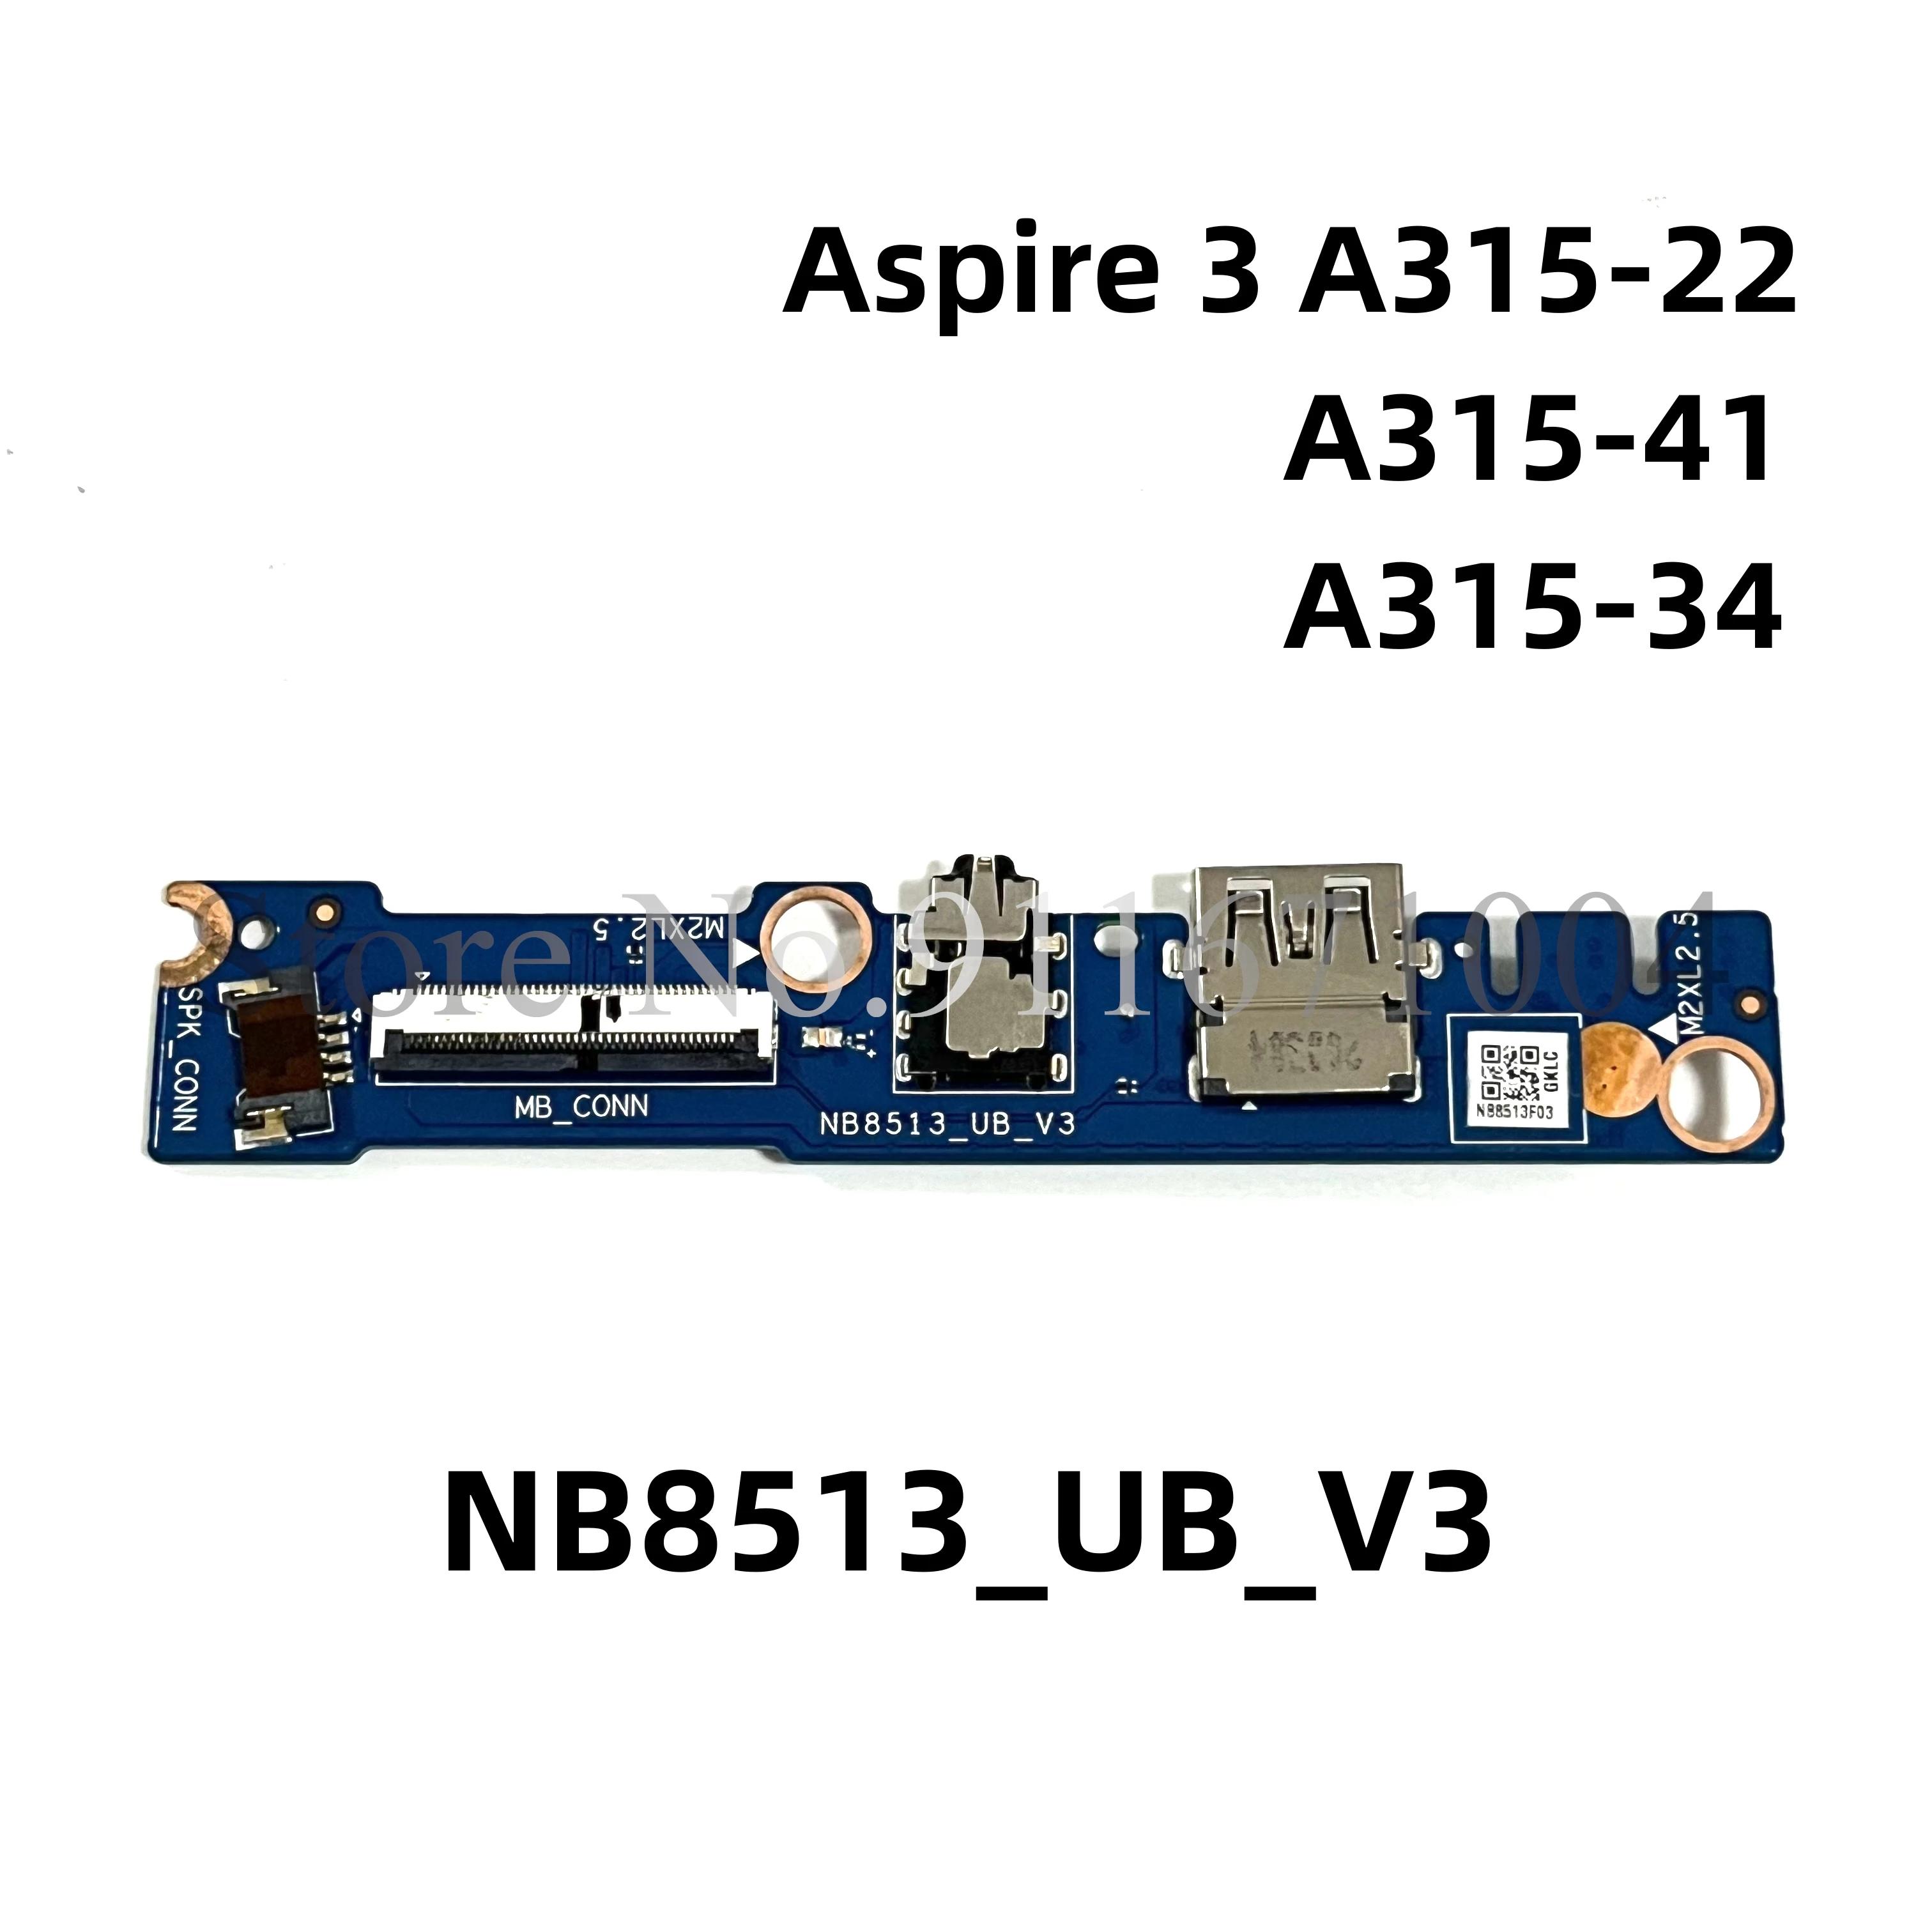 Acer Aspire 3 A315-22 A315-41 33 A315-34, Extensa 215-31   USB  , NB8513_UB_V3,  